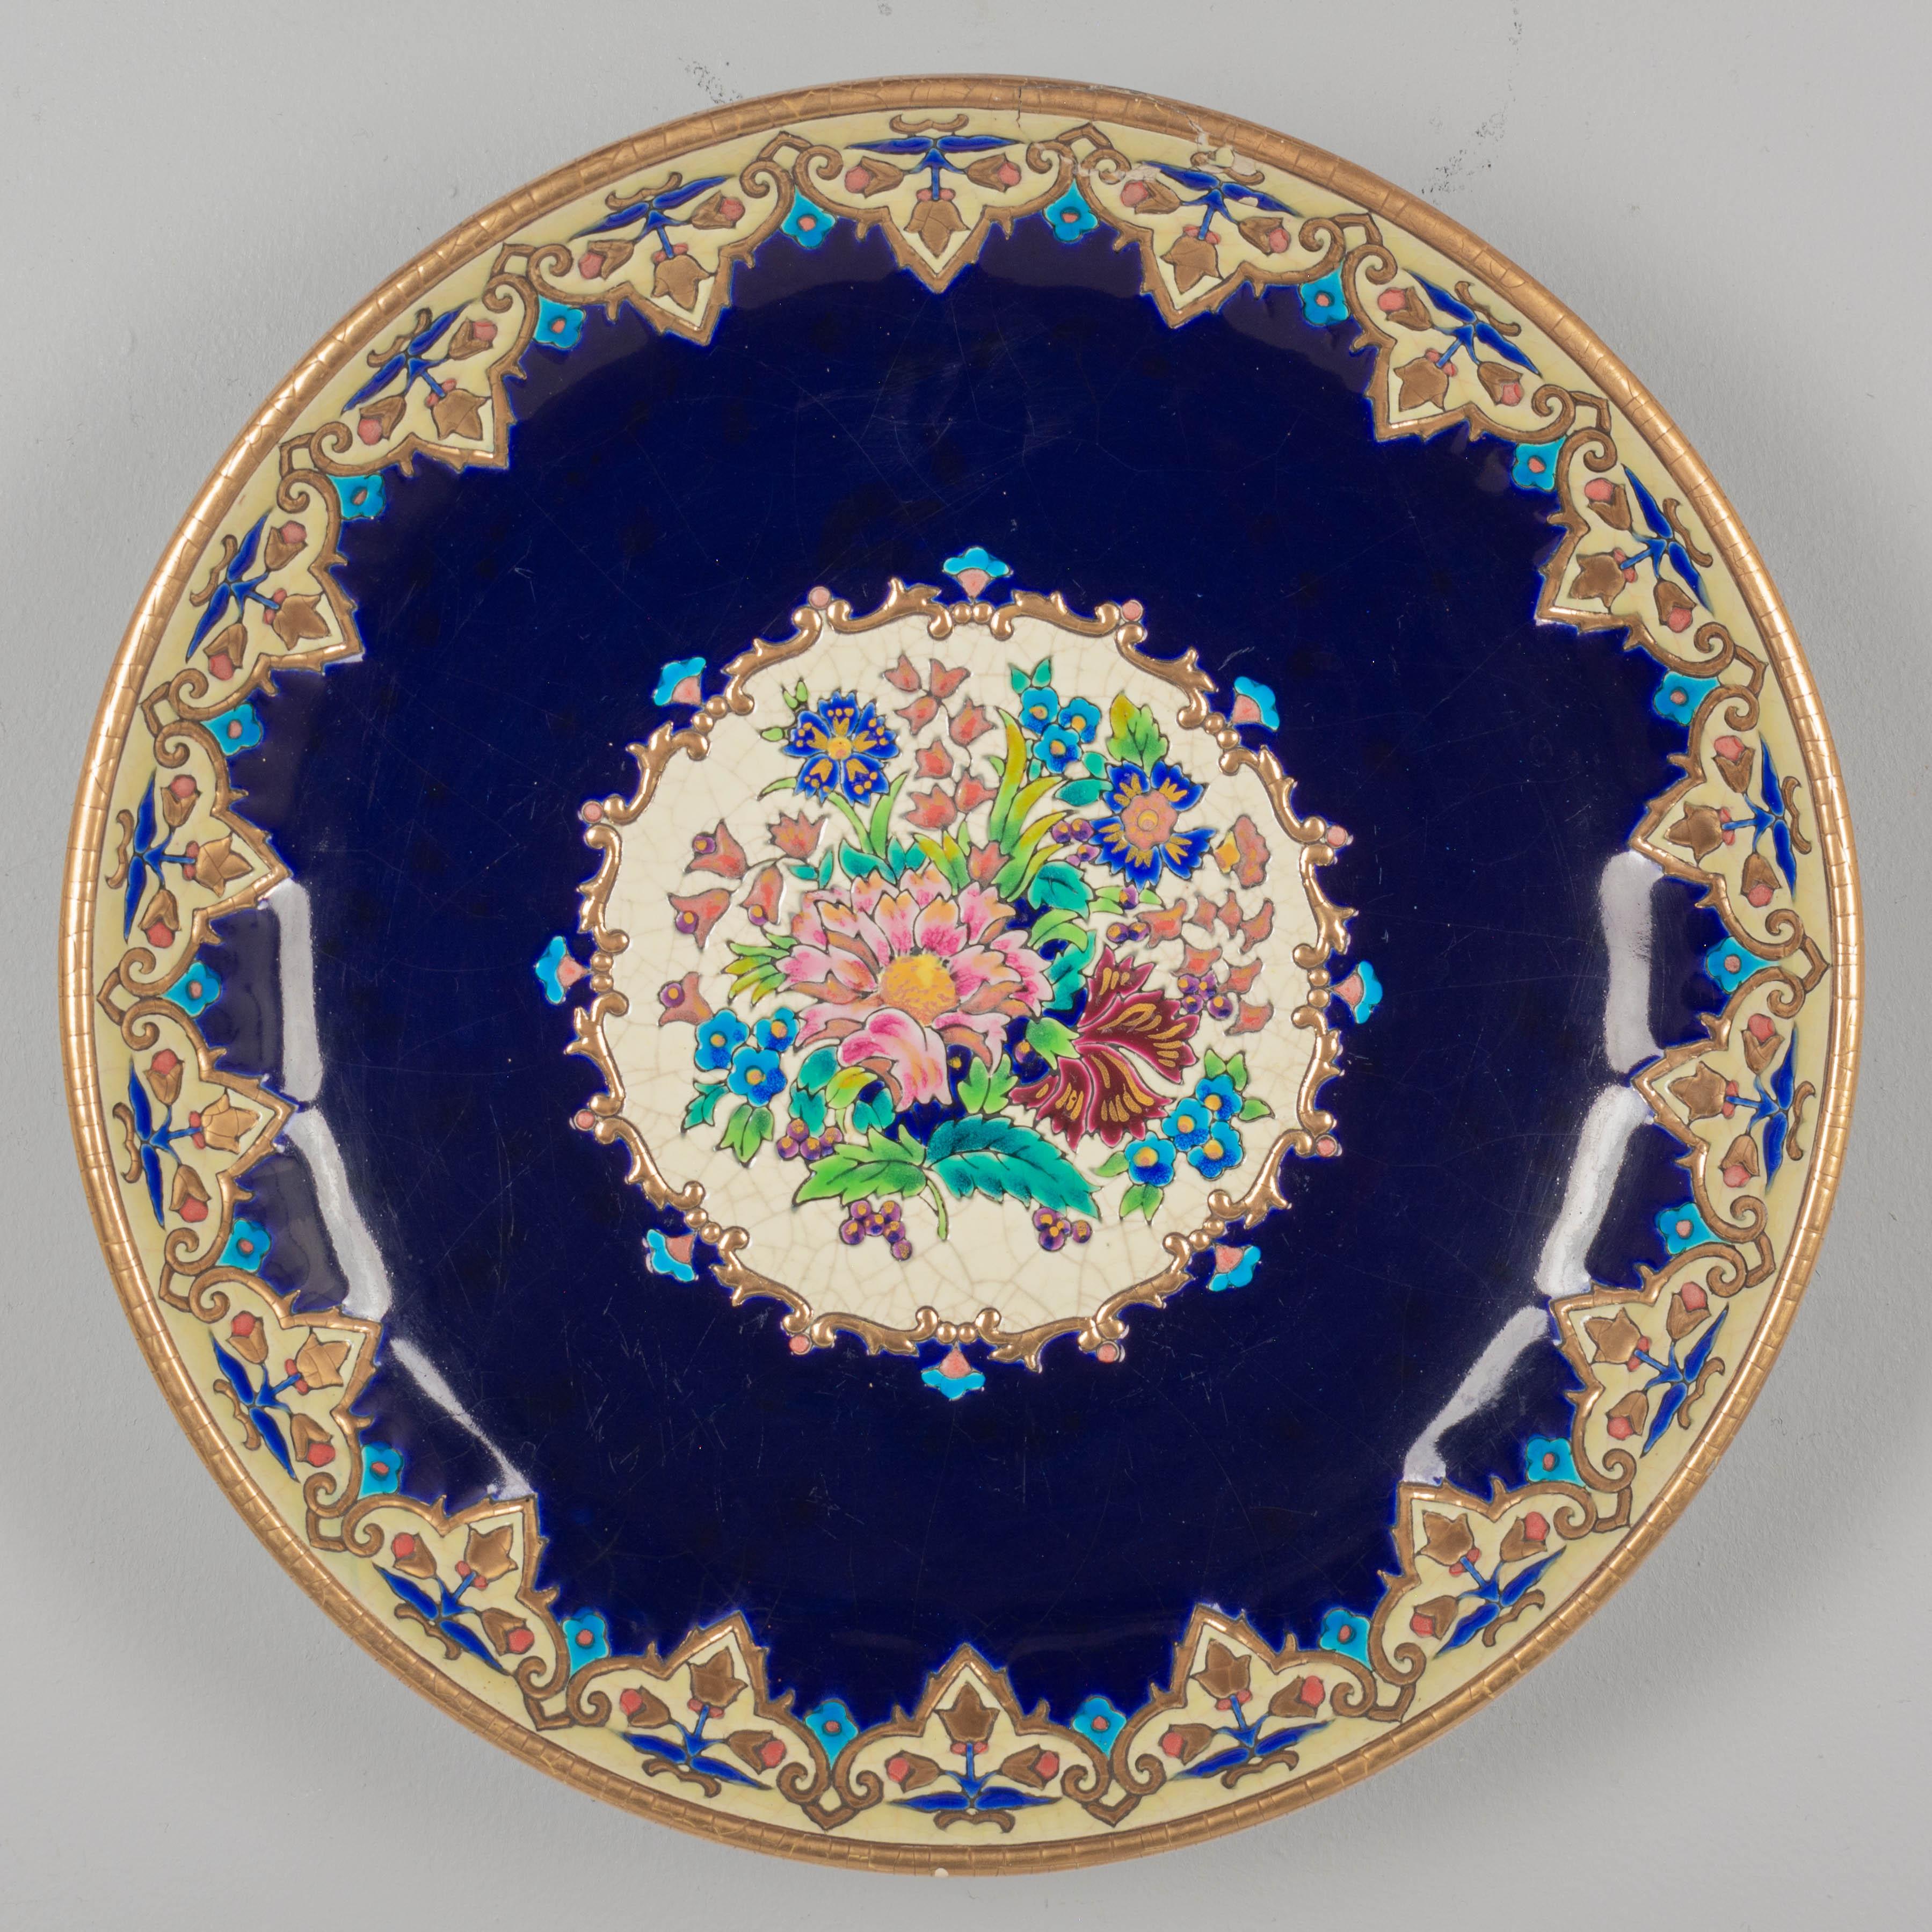 Un grand bol centre de table en céramique Longwy de l'Art déco français, peint à la main dans le style de l'émail cloisonné de la Chinoiserie. Fond bleu cobalt foncé avec un bouquet floral central coloré en rose, orange, magenta, vert et bleu. 